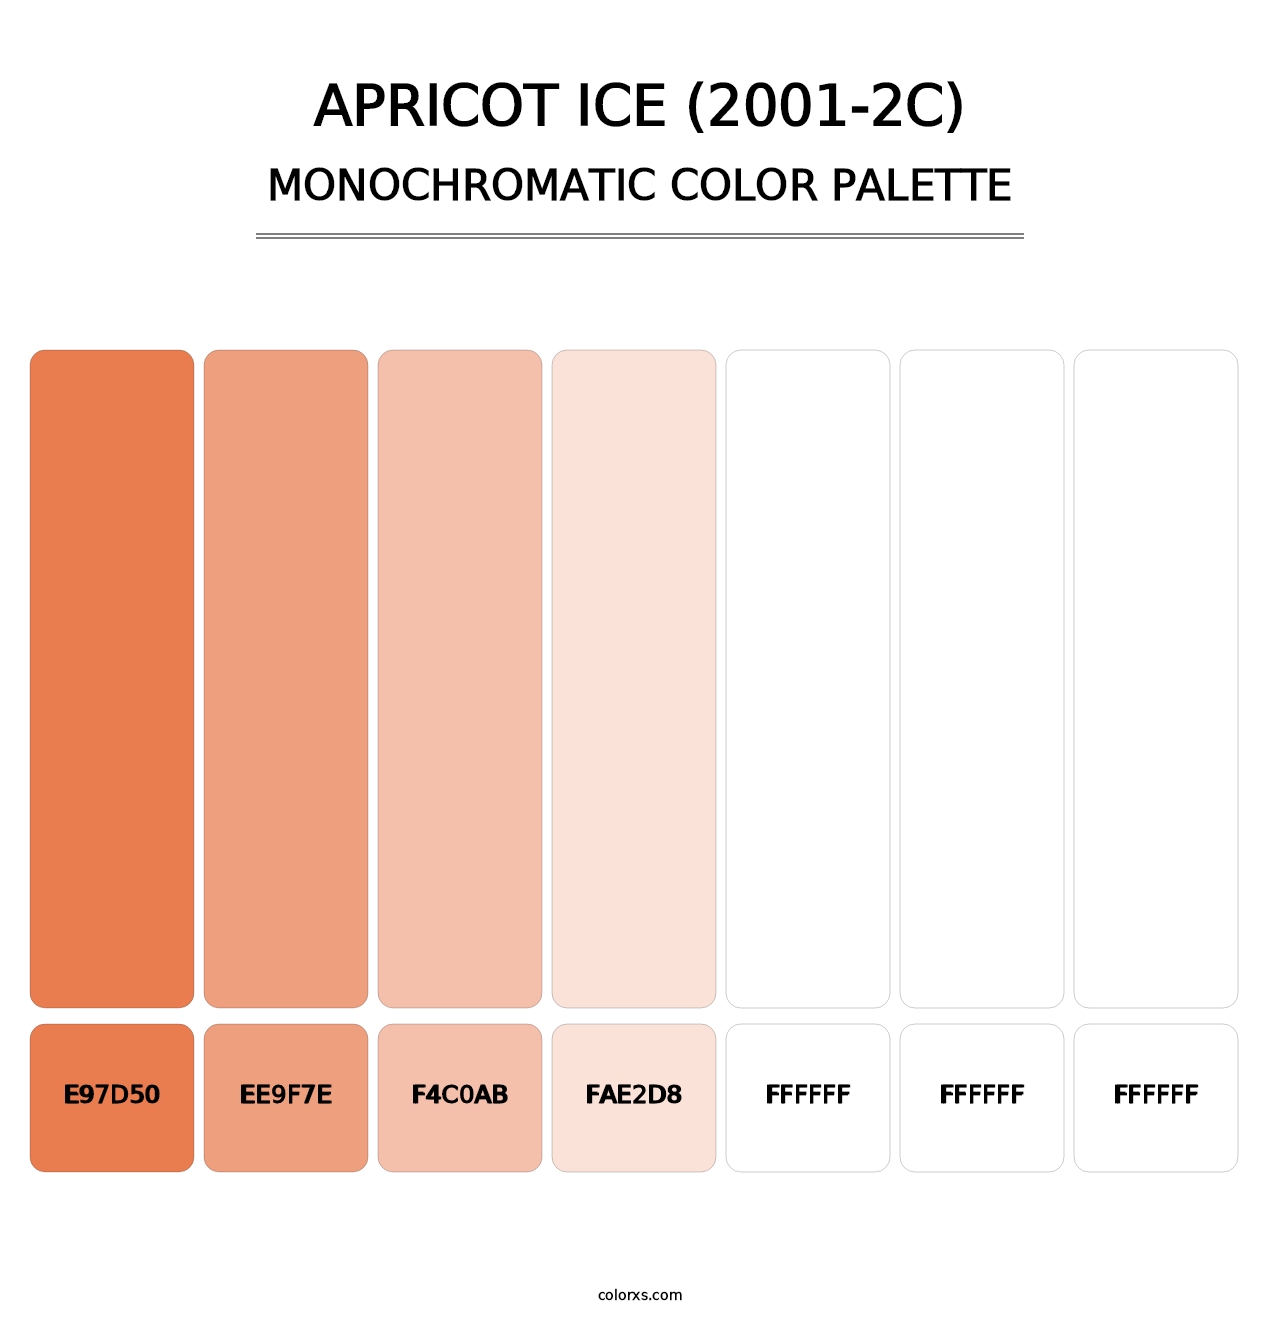 Apricot Ice (2001-2C) - Monochromatic Color Palette